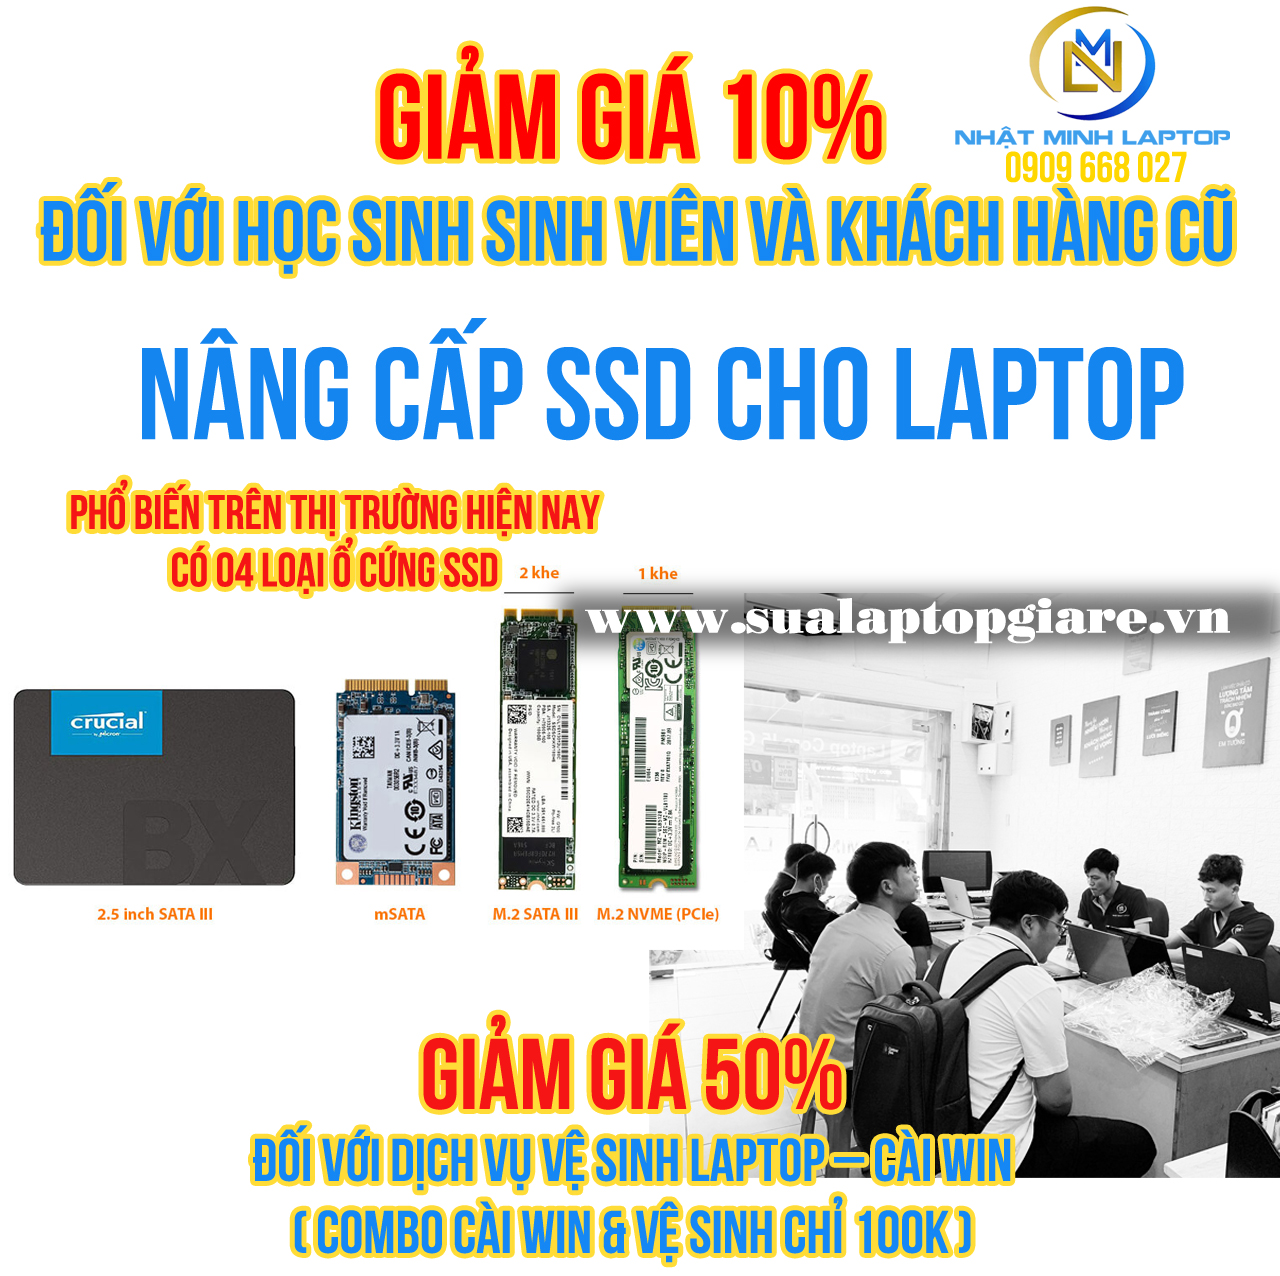 LẮP CẢ 2 Ổ CỨNG SSD VÀ HDD CHO LAPTOP